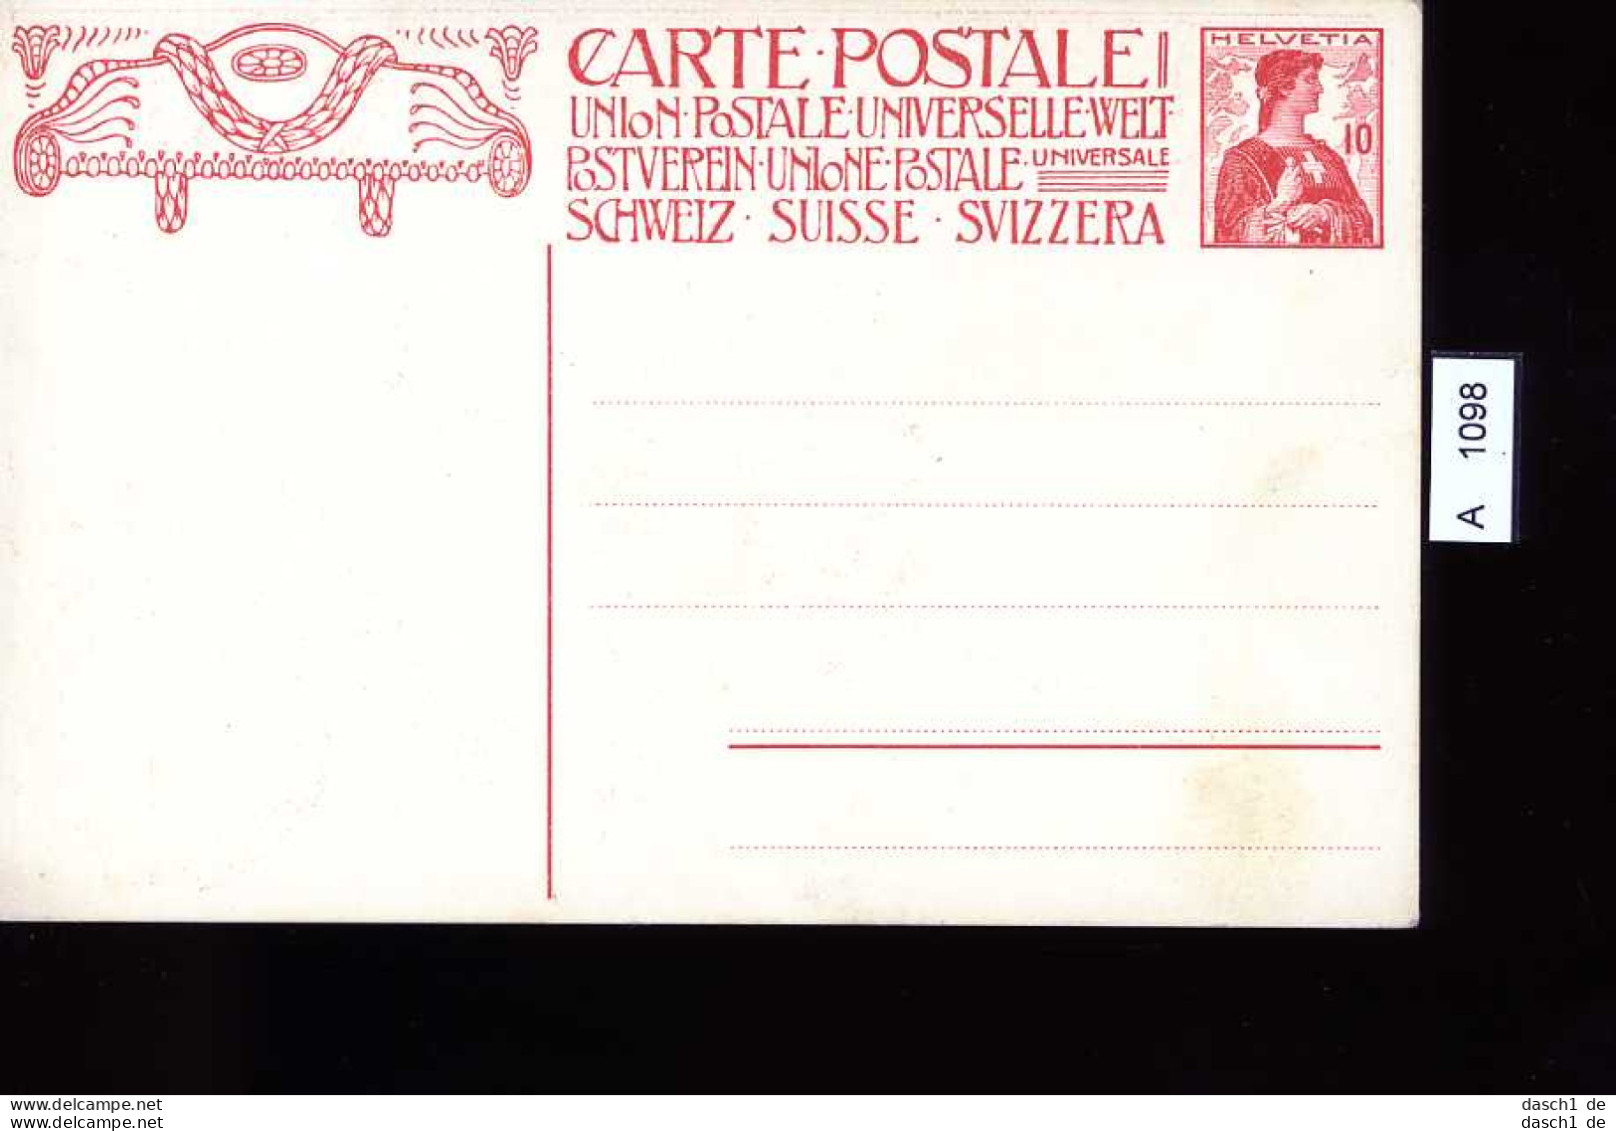 Schweiz, 6 Lose u.a., Postkarte Rheinfall Schaffhausen, 1959 echt gelaufen